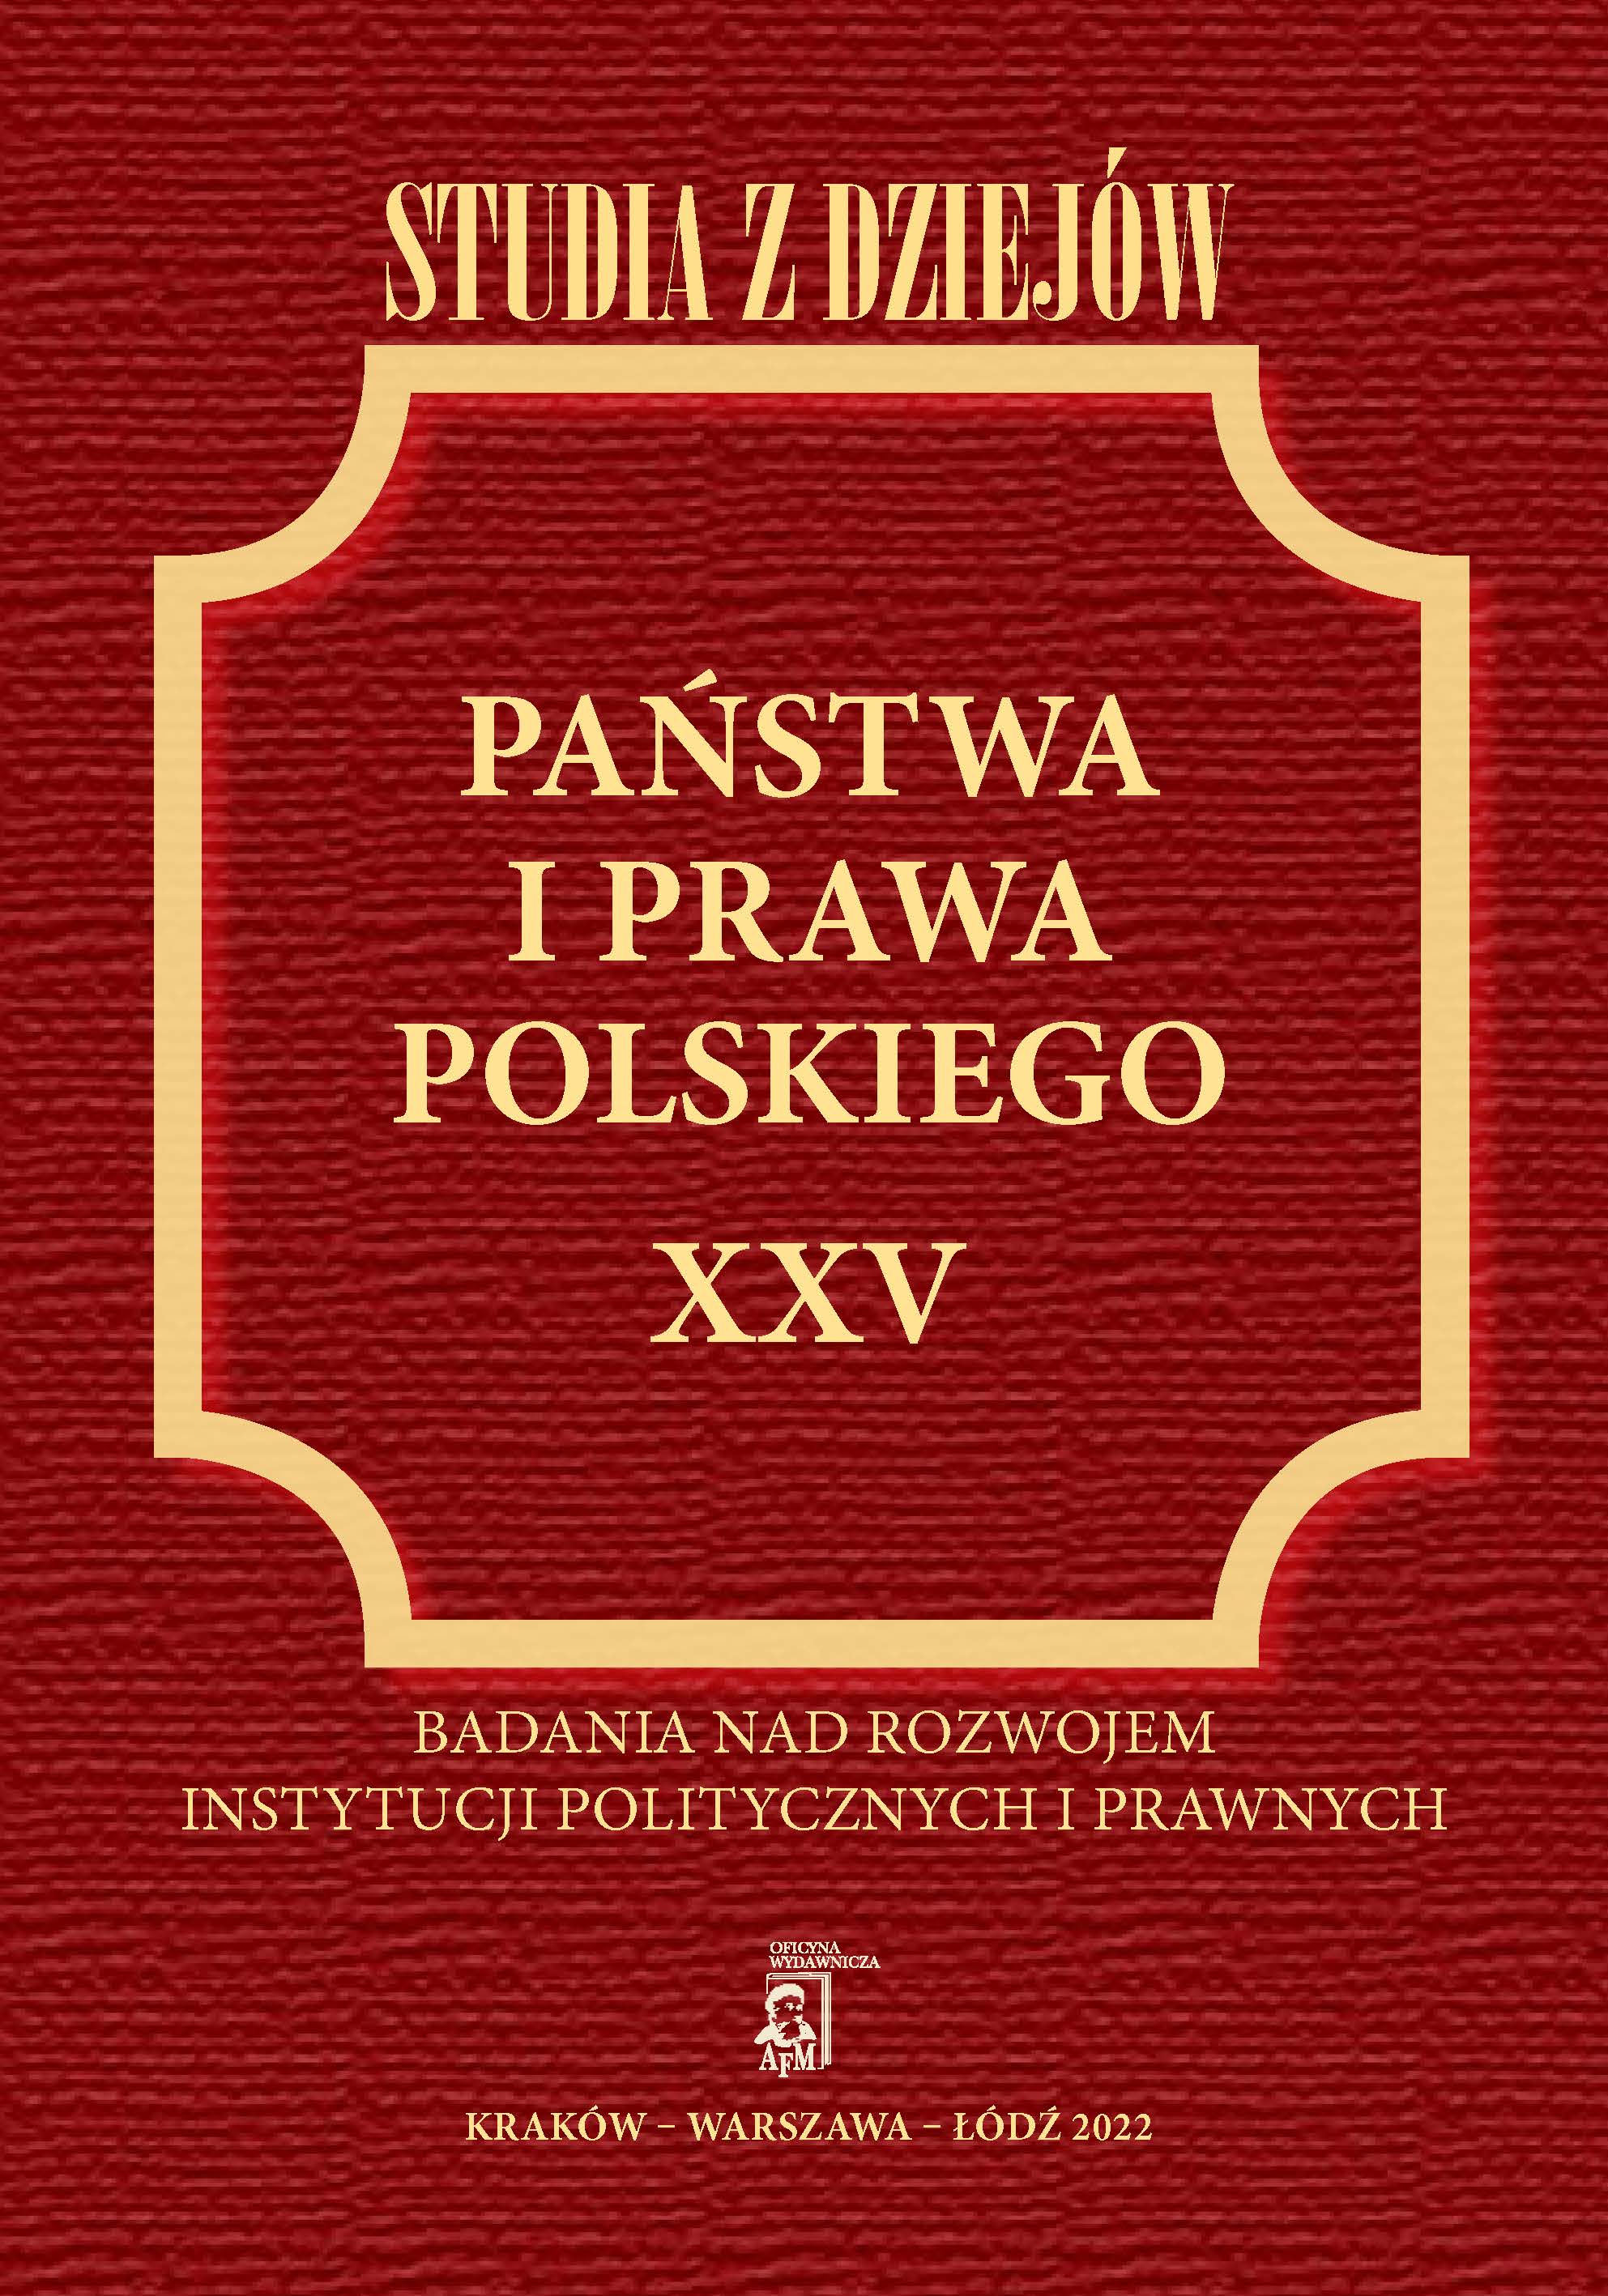 Polowe organy administracji wojska polskiego w sprawach rekwizycji żywności w okresie powstania listopadowego 1830–1831 roku